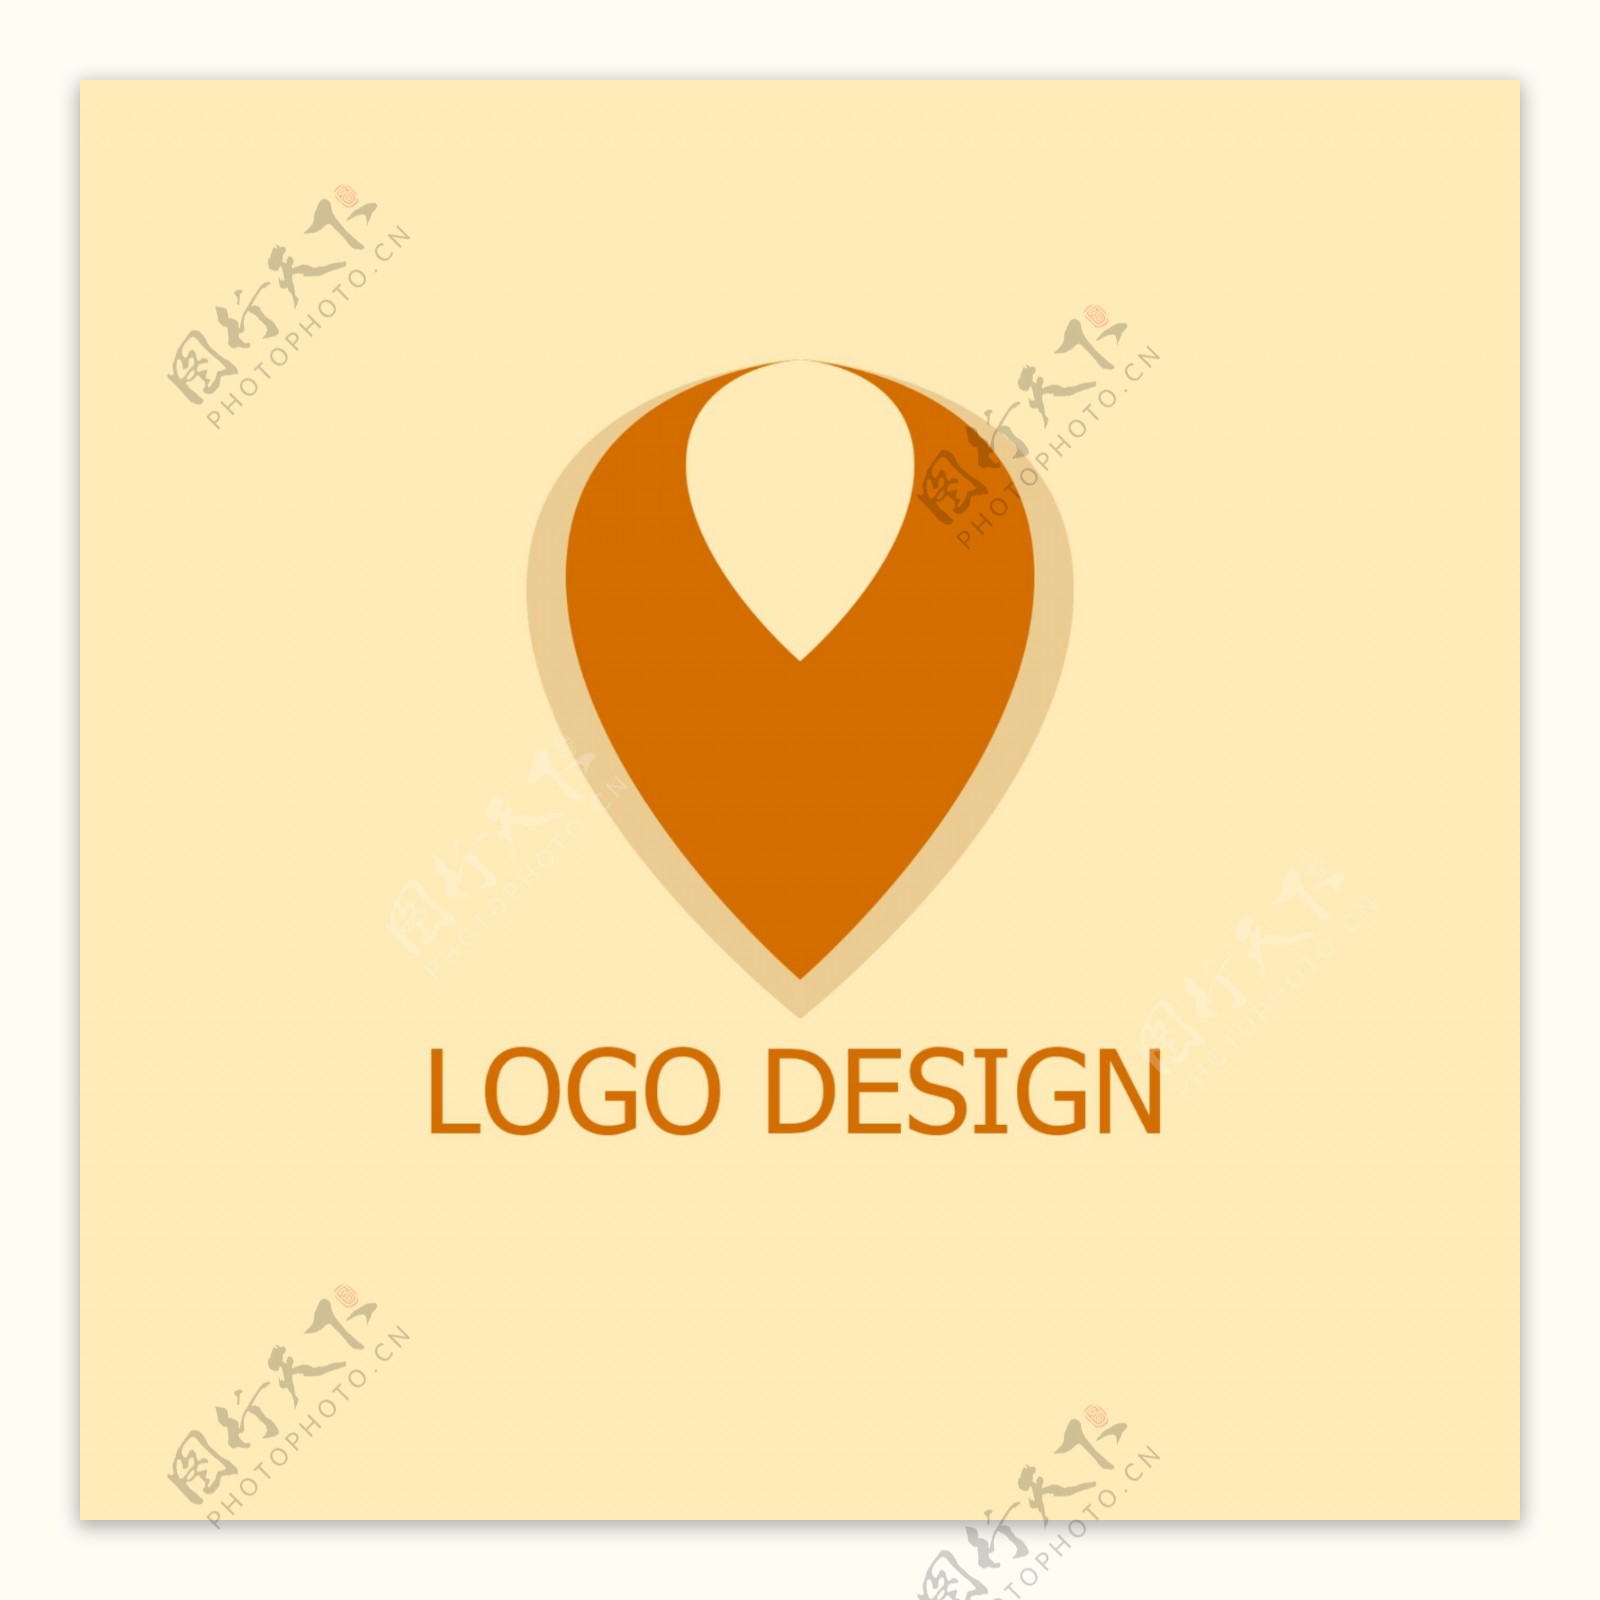 简约创意企业商标logo设计